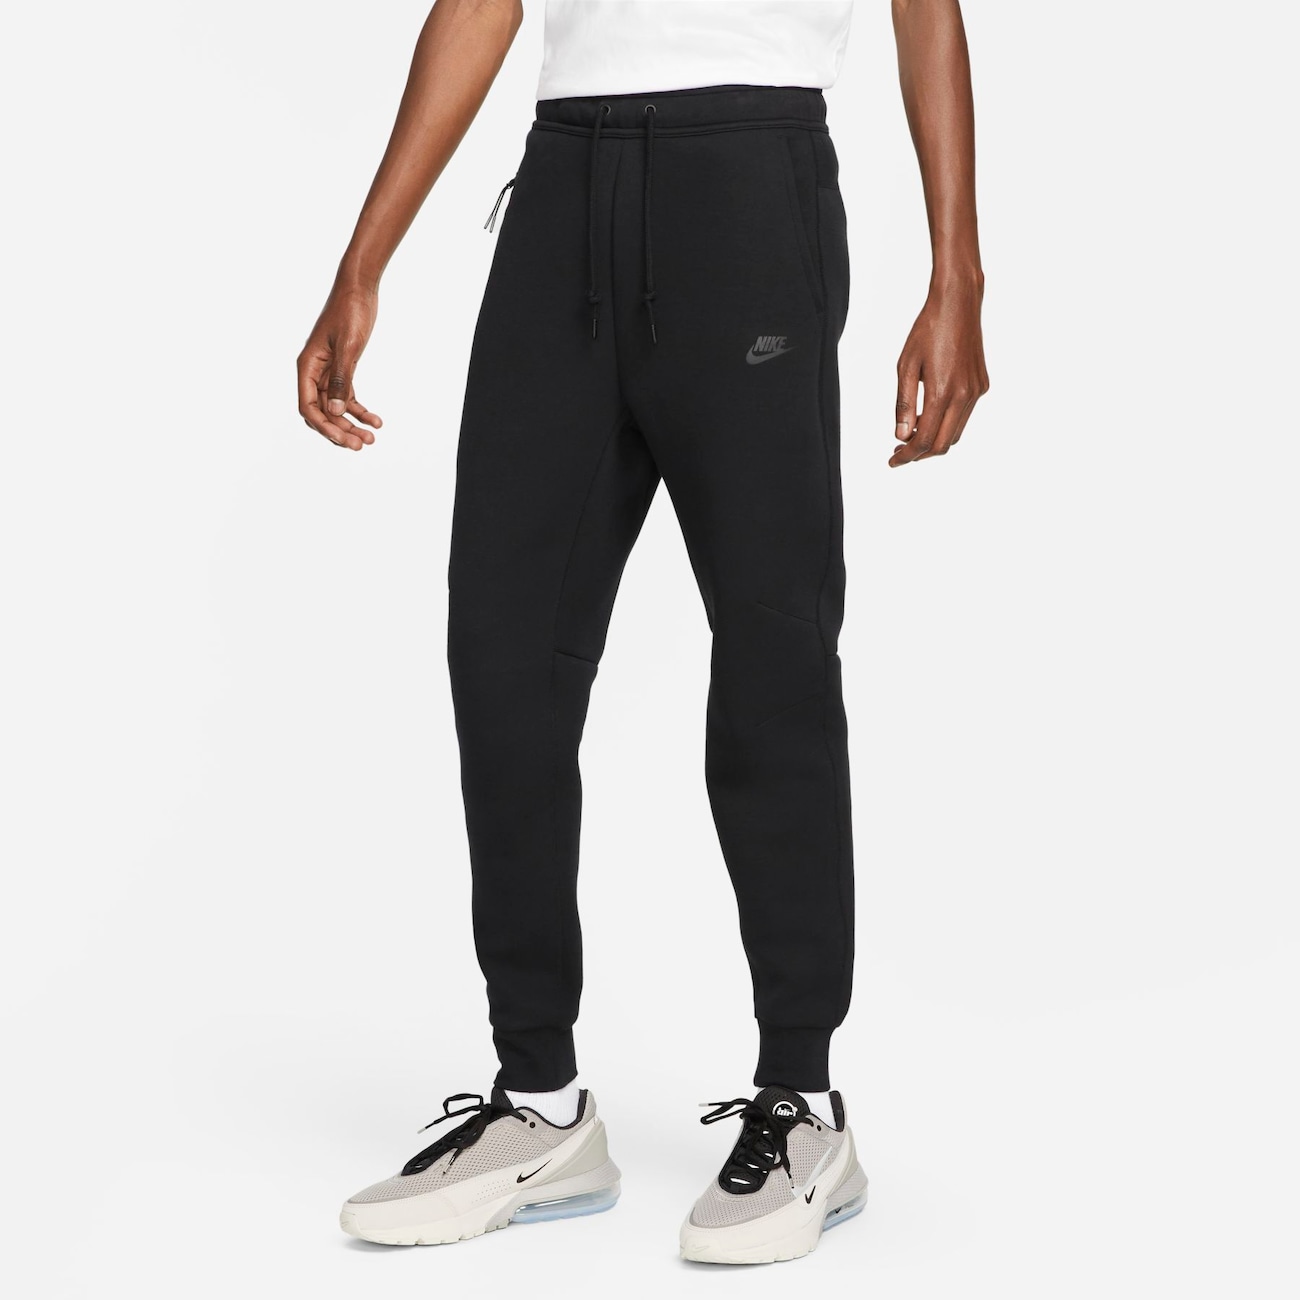 Calça Nike Sportswear Tech Fleece - Feminina em Promoção